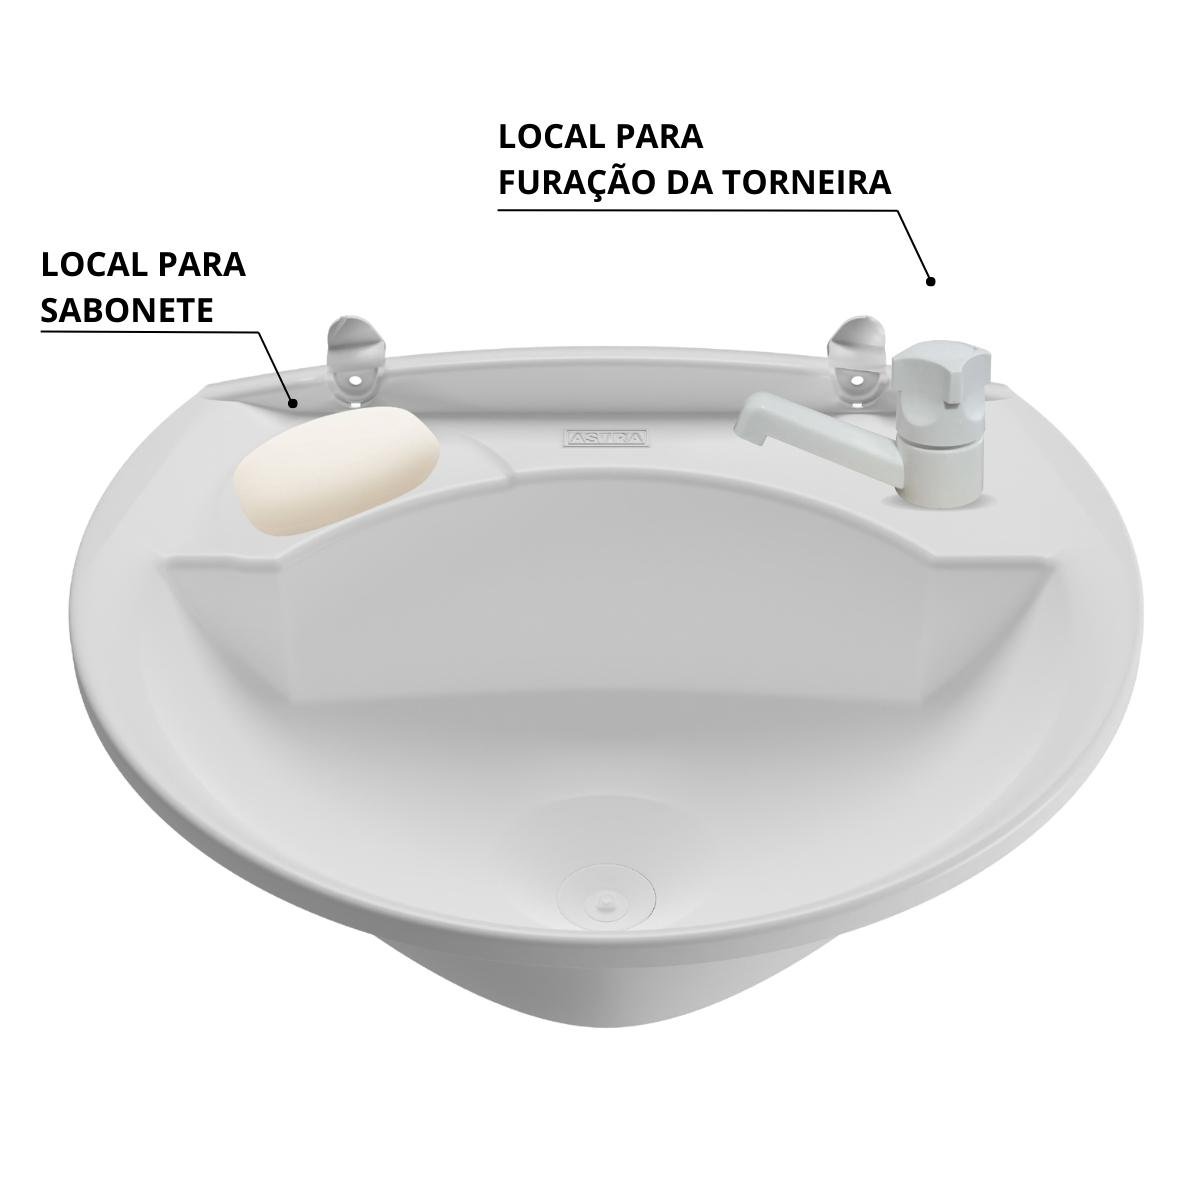 Pia Lavatório Banheiro 4L + Torneira Branca + Sifão Universal Sanfonado + Fita Veda Rosca - 10